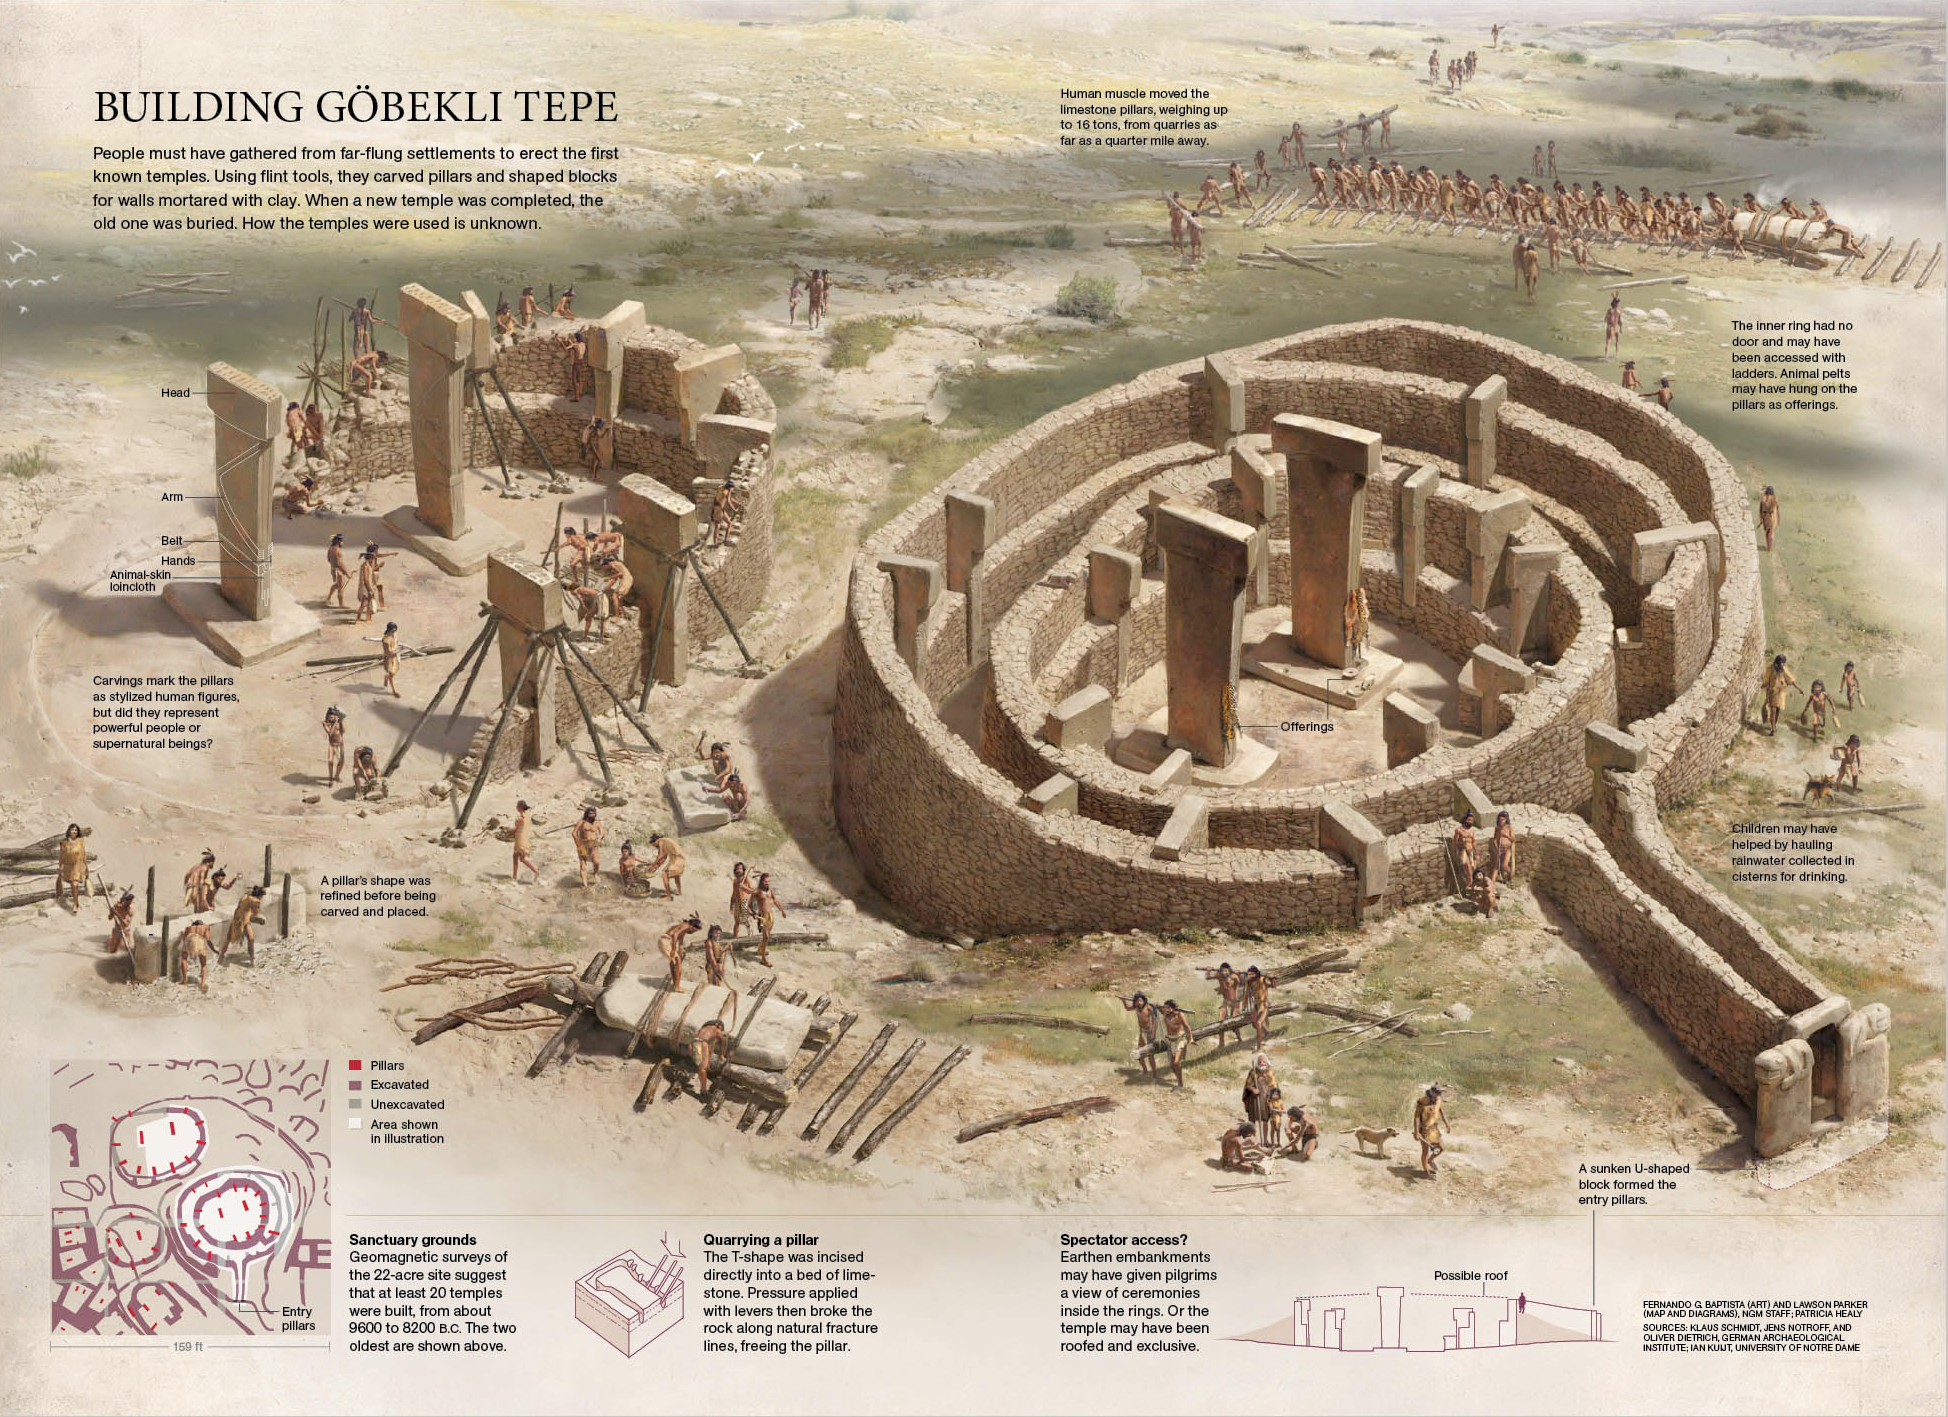 哥贝克力石阵（9,600B.C.-8,200B.C），全球已知最早的神殿。考古学家在遗址内发现了200多根完好的石柱，由当时的居民从400米的一处高地搬运至此，每根石柱大约需要500个居民齐心合力，由当时的人口密度来看需要社区全员参与。有学者认为每年小麦成熟之时附近的居民会聚集在此建立神殿和举行仪式。